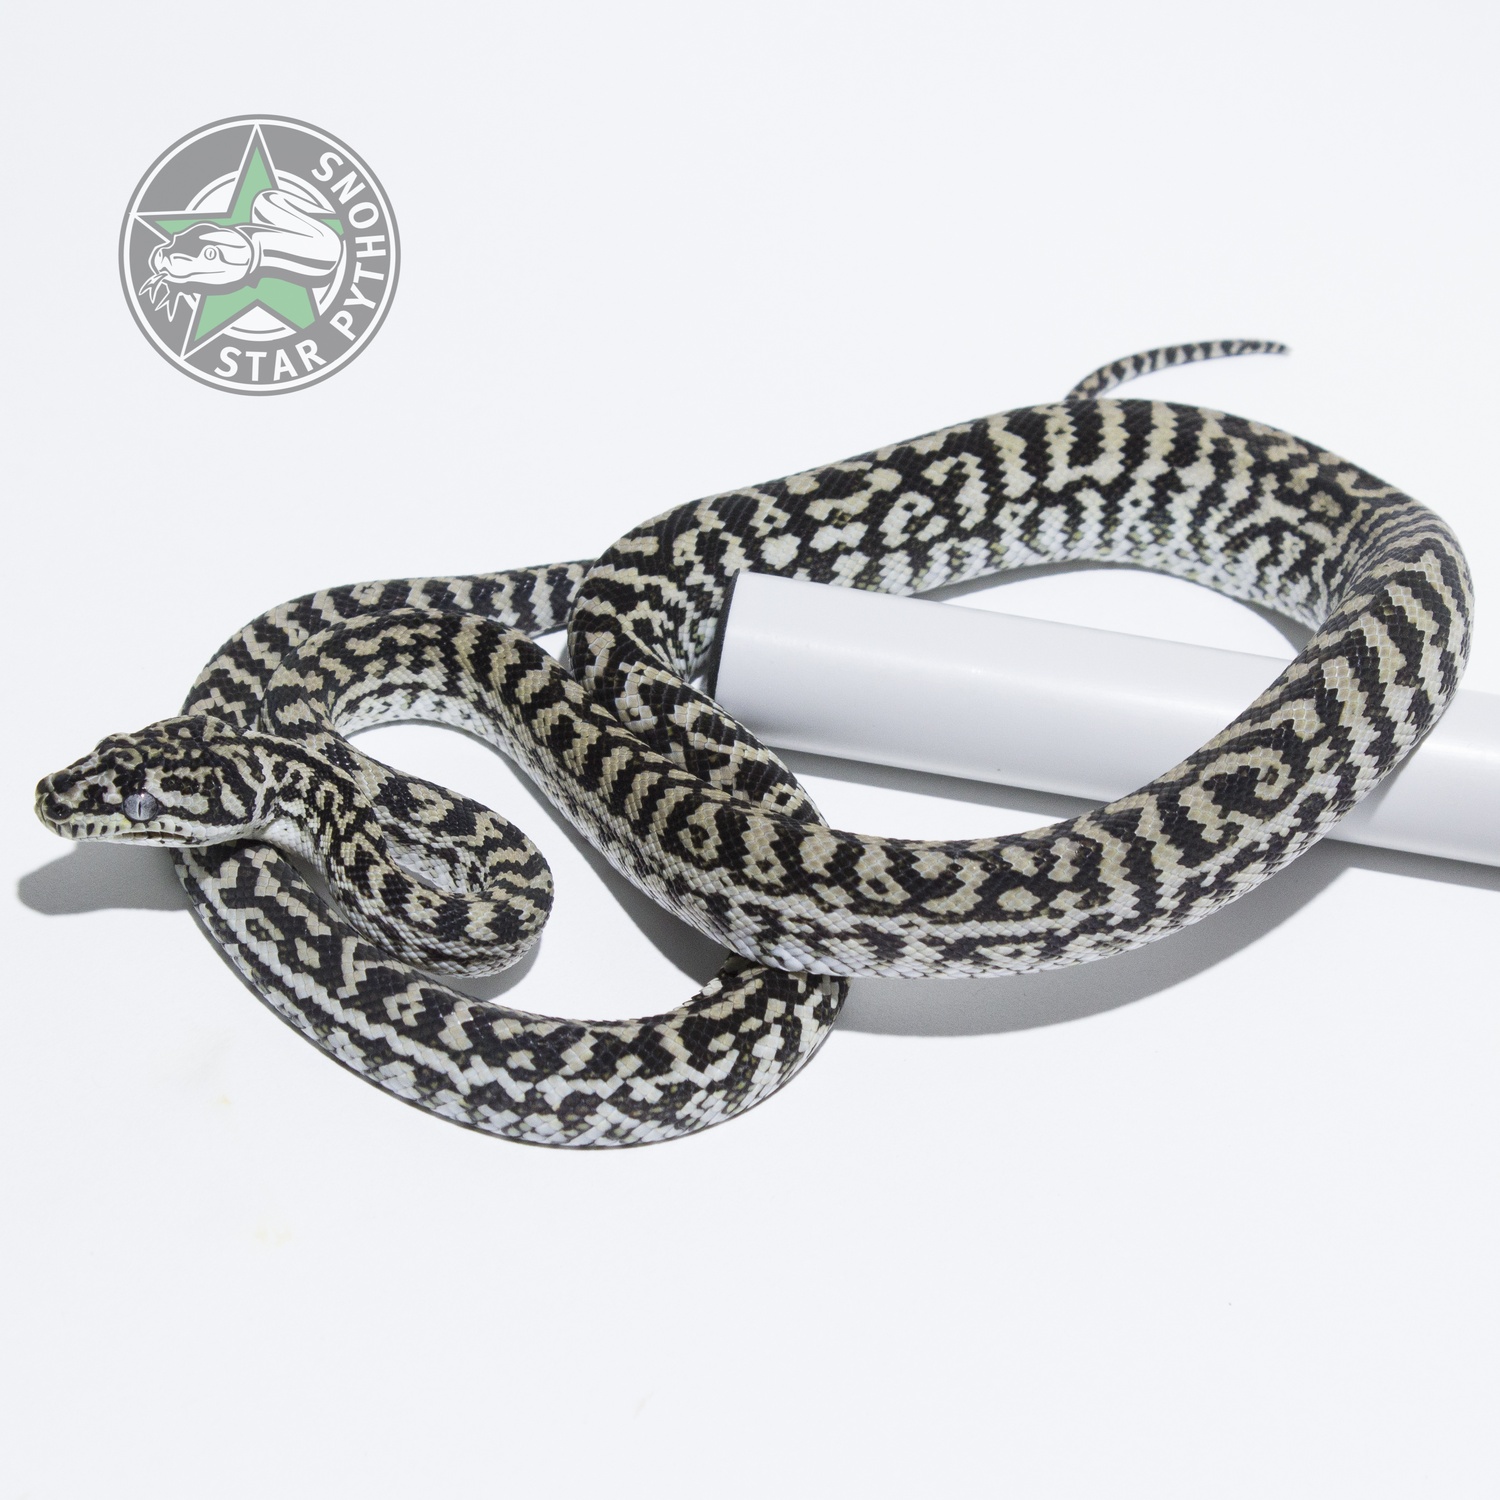 Axanthic Zebra Other Carpet Python by StarPythons Inc.